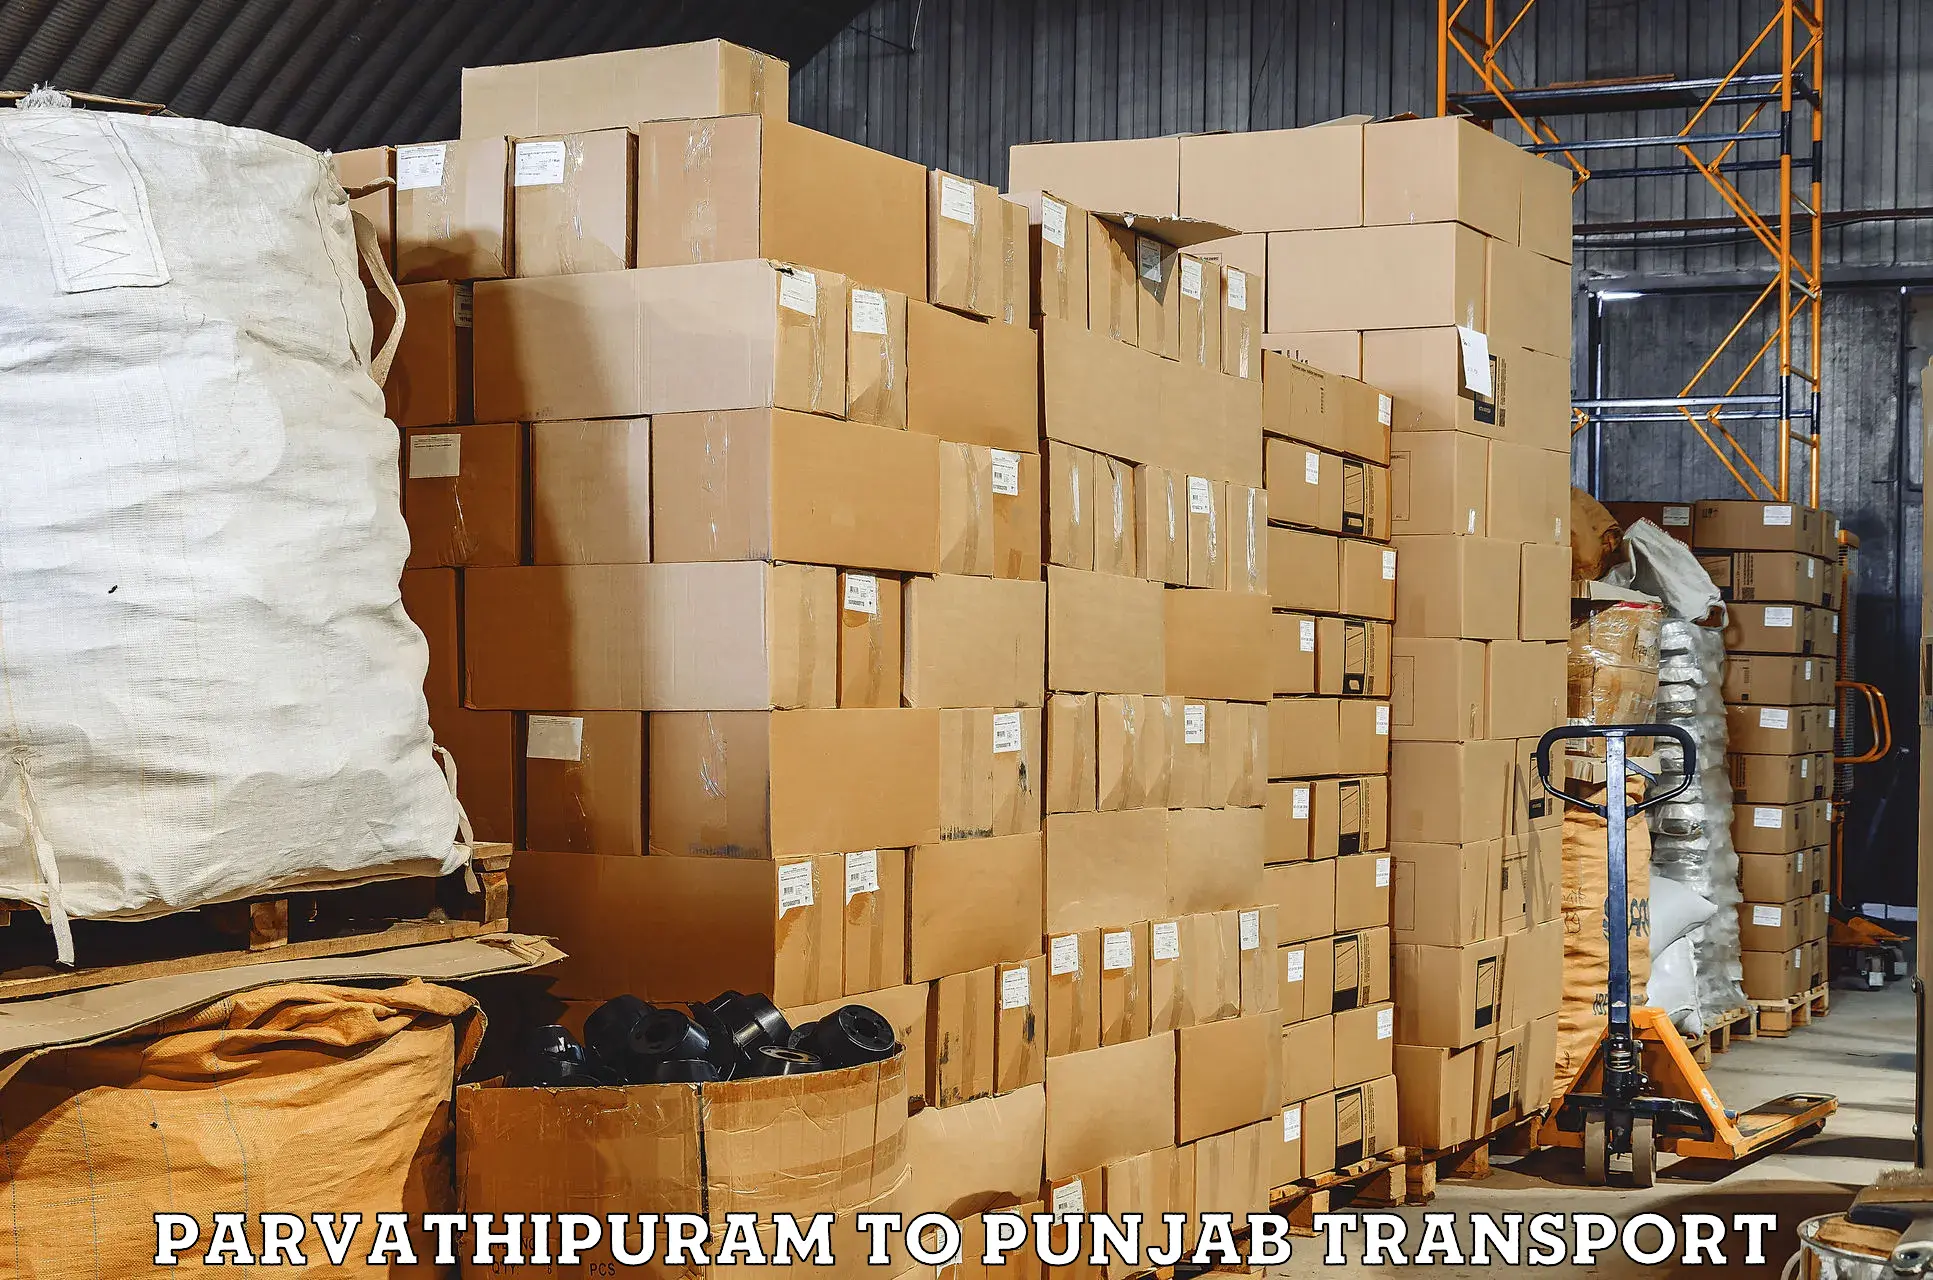 Commercial transport service Parvathipuram to Faridkot